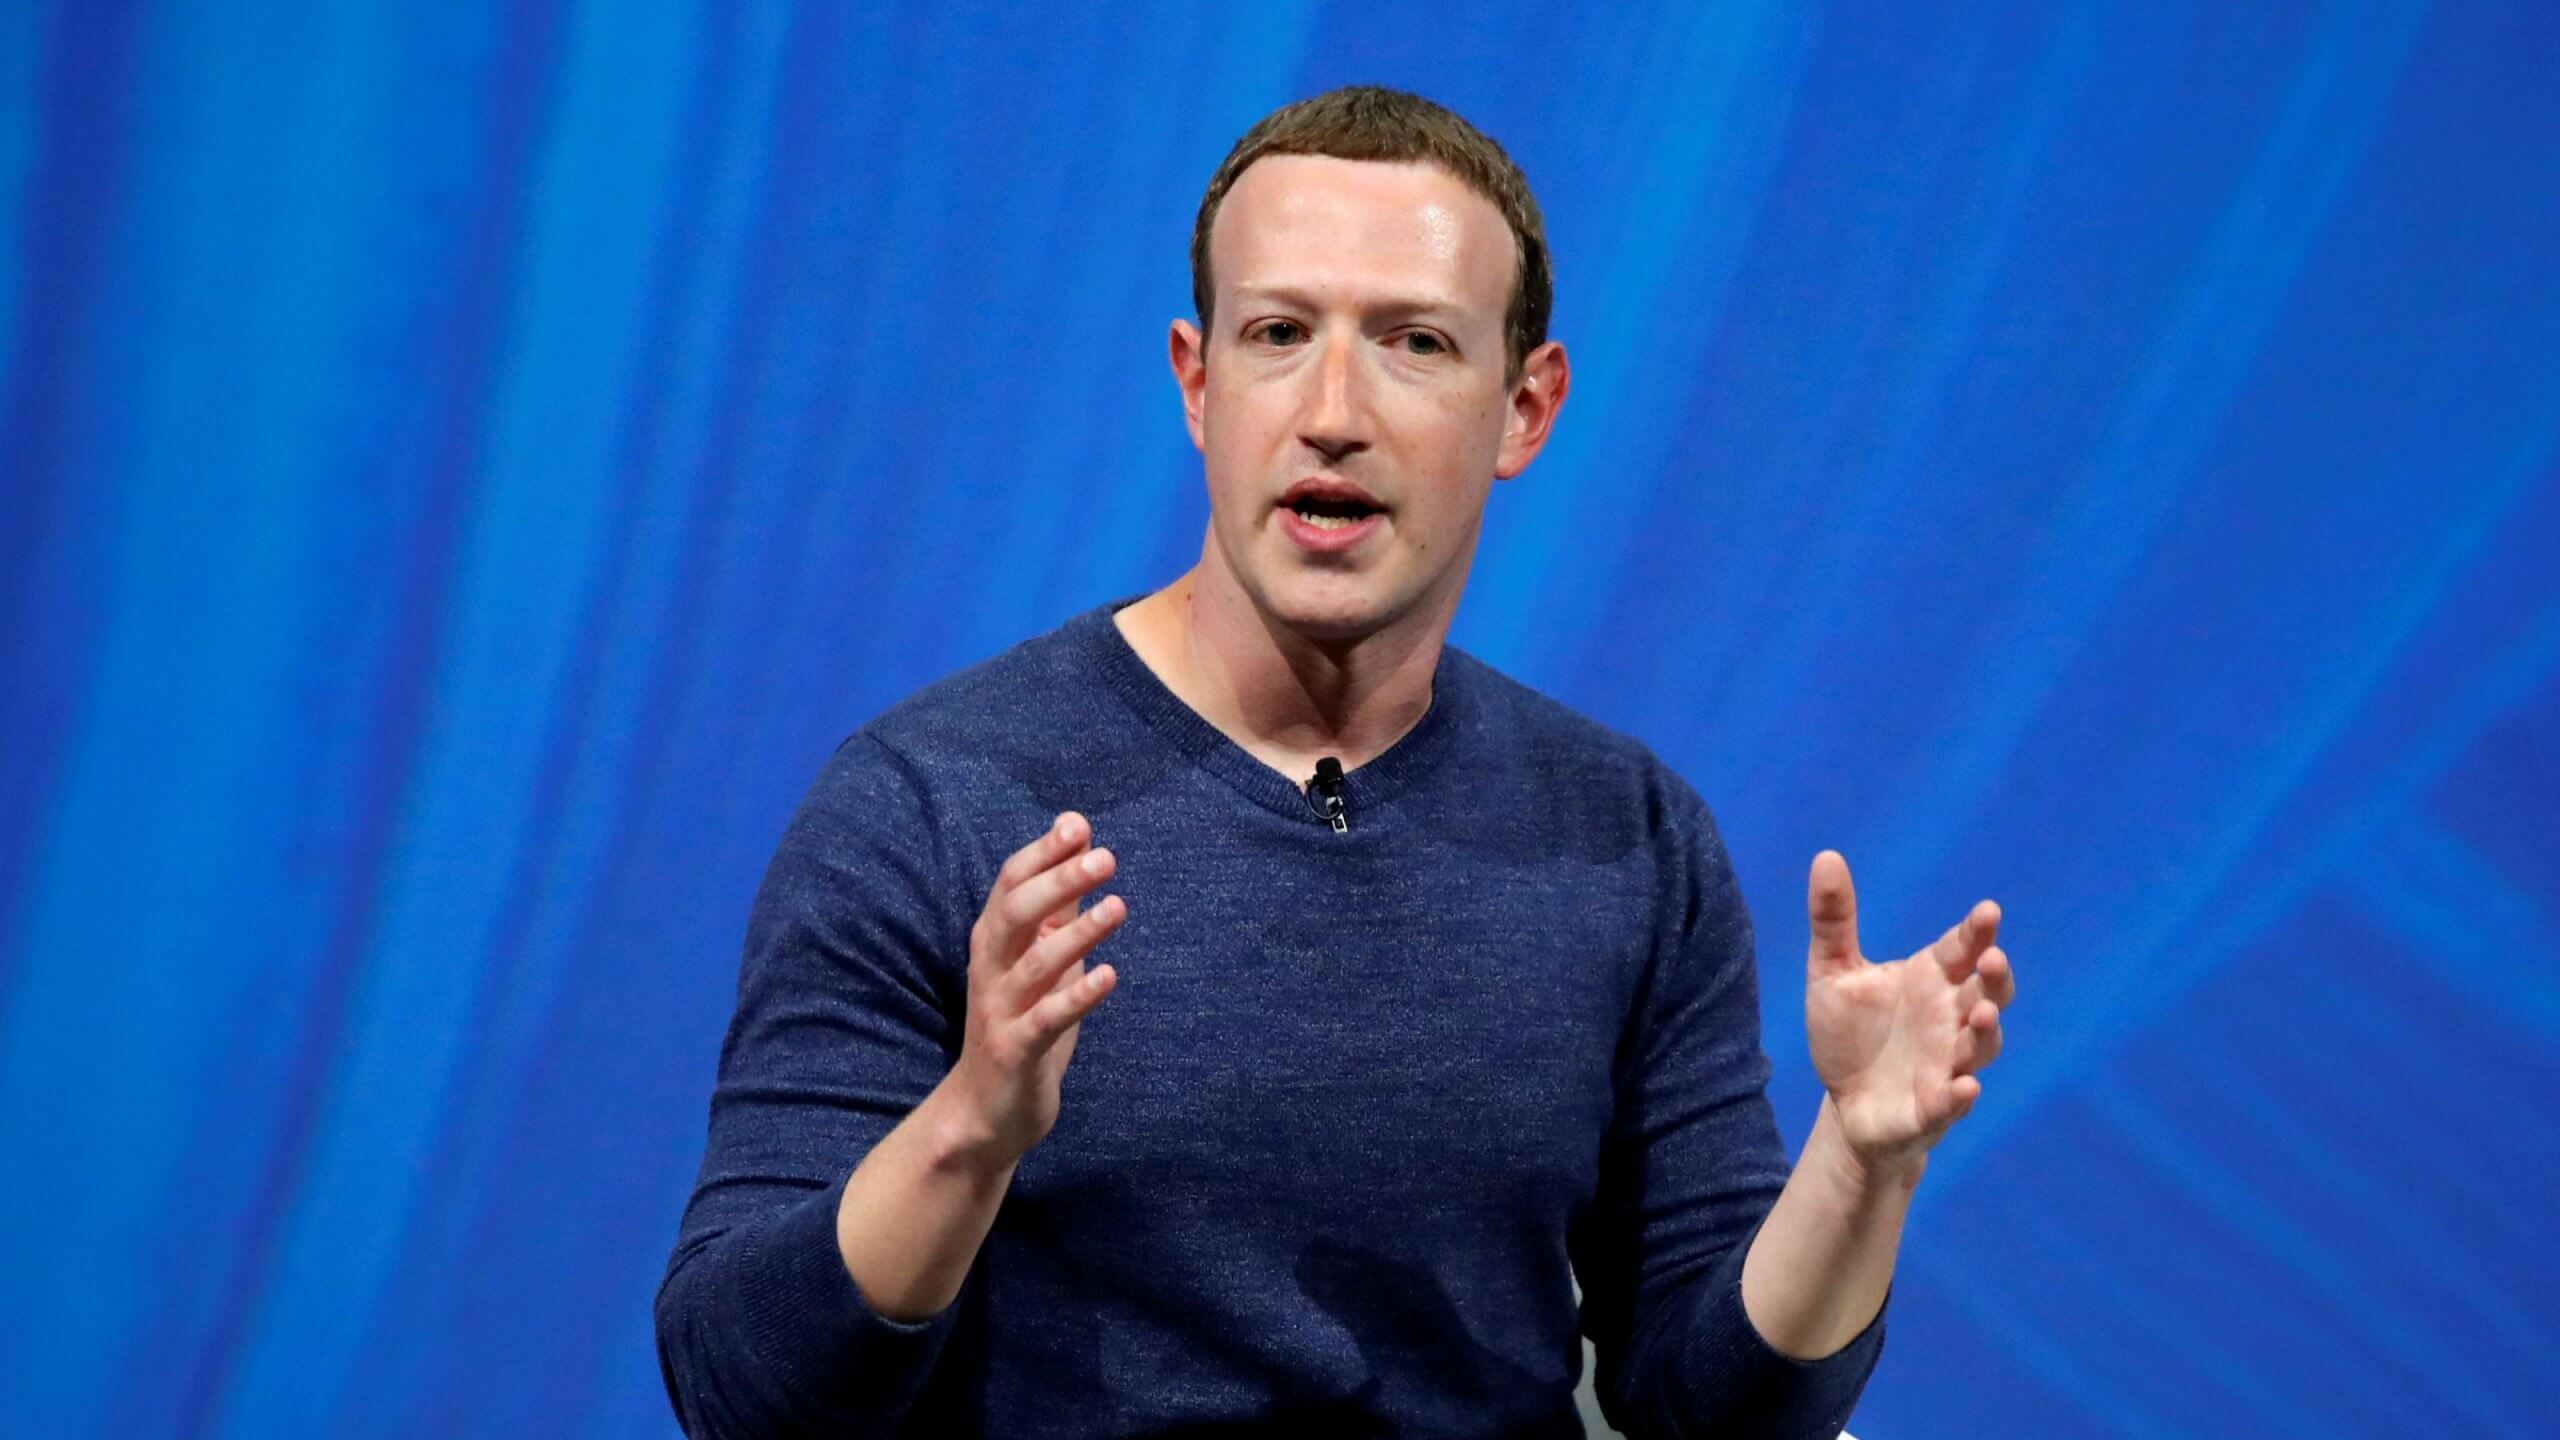 Mark Zuckerberg asks governments to regulate tech firms